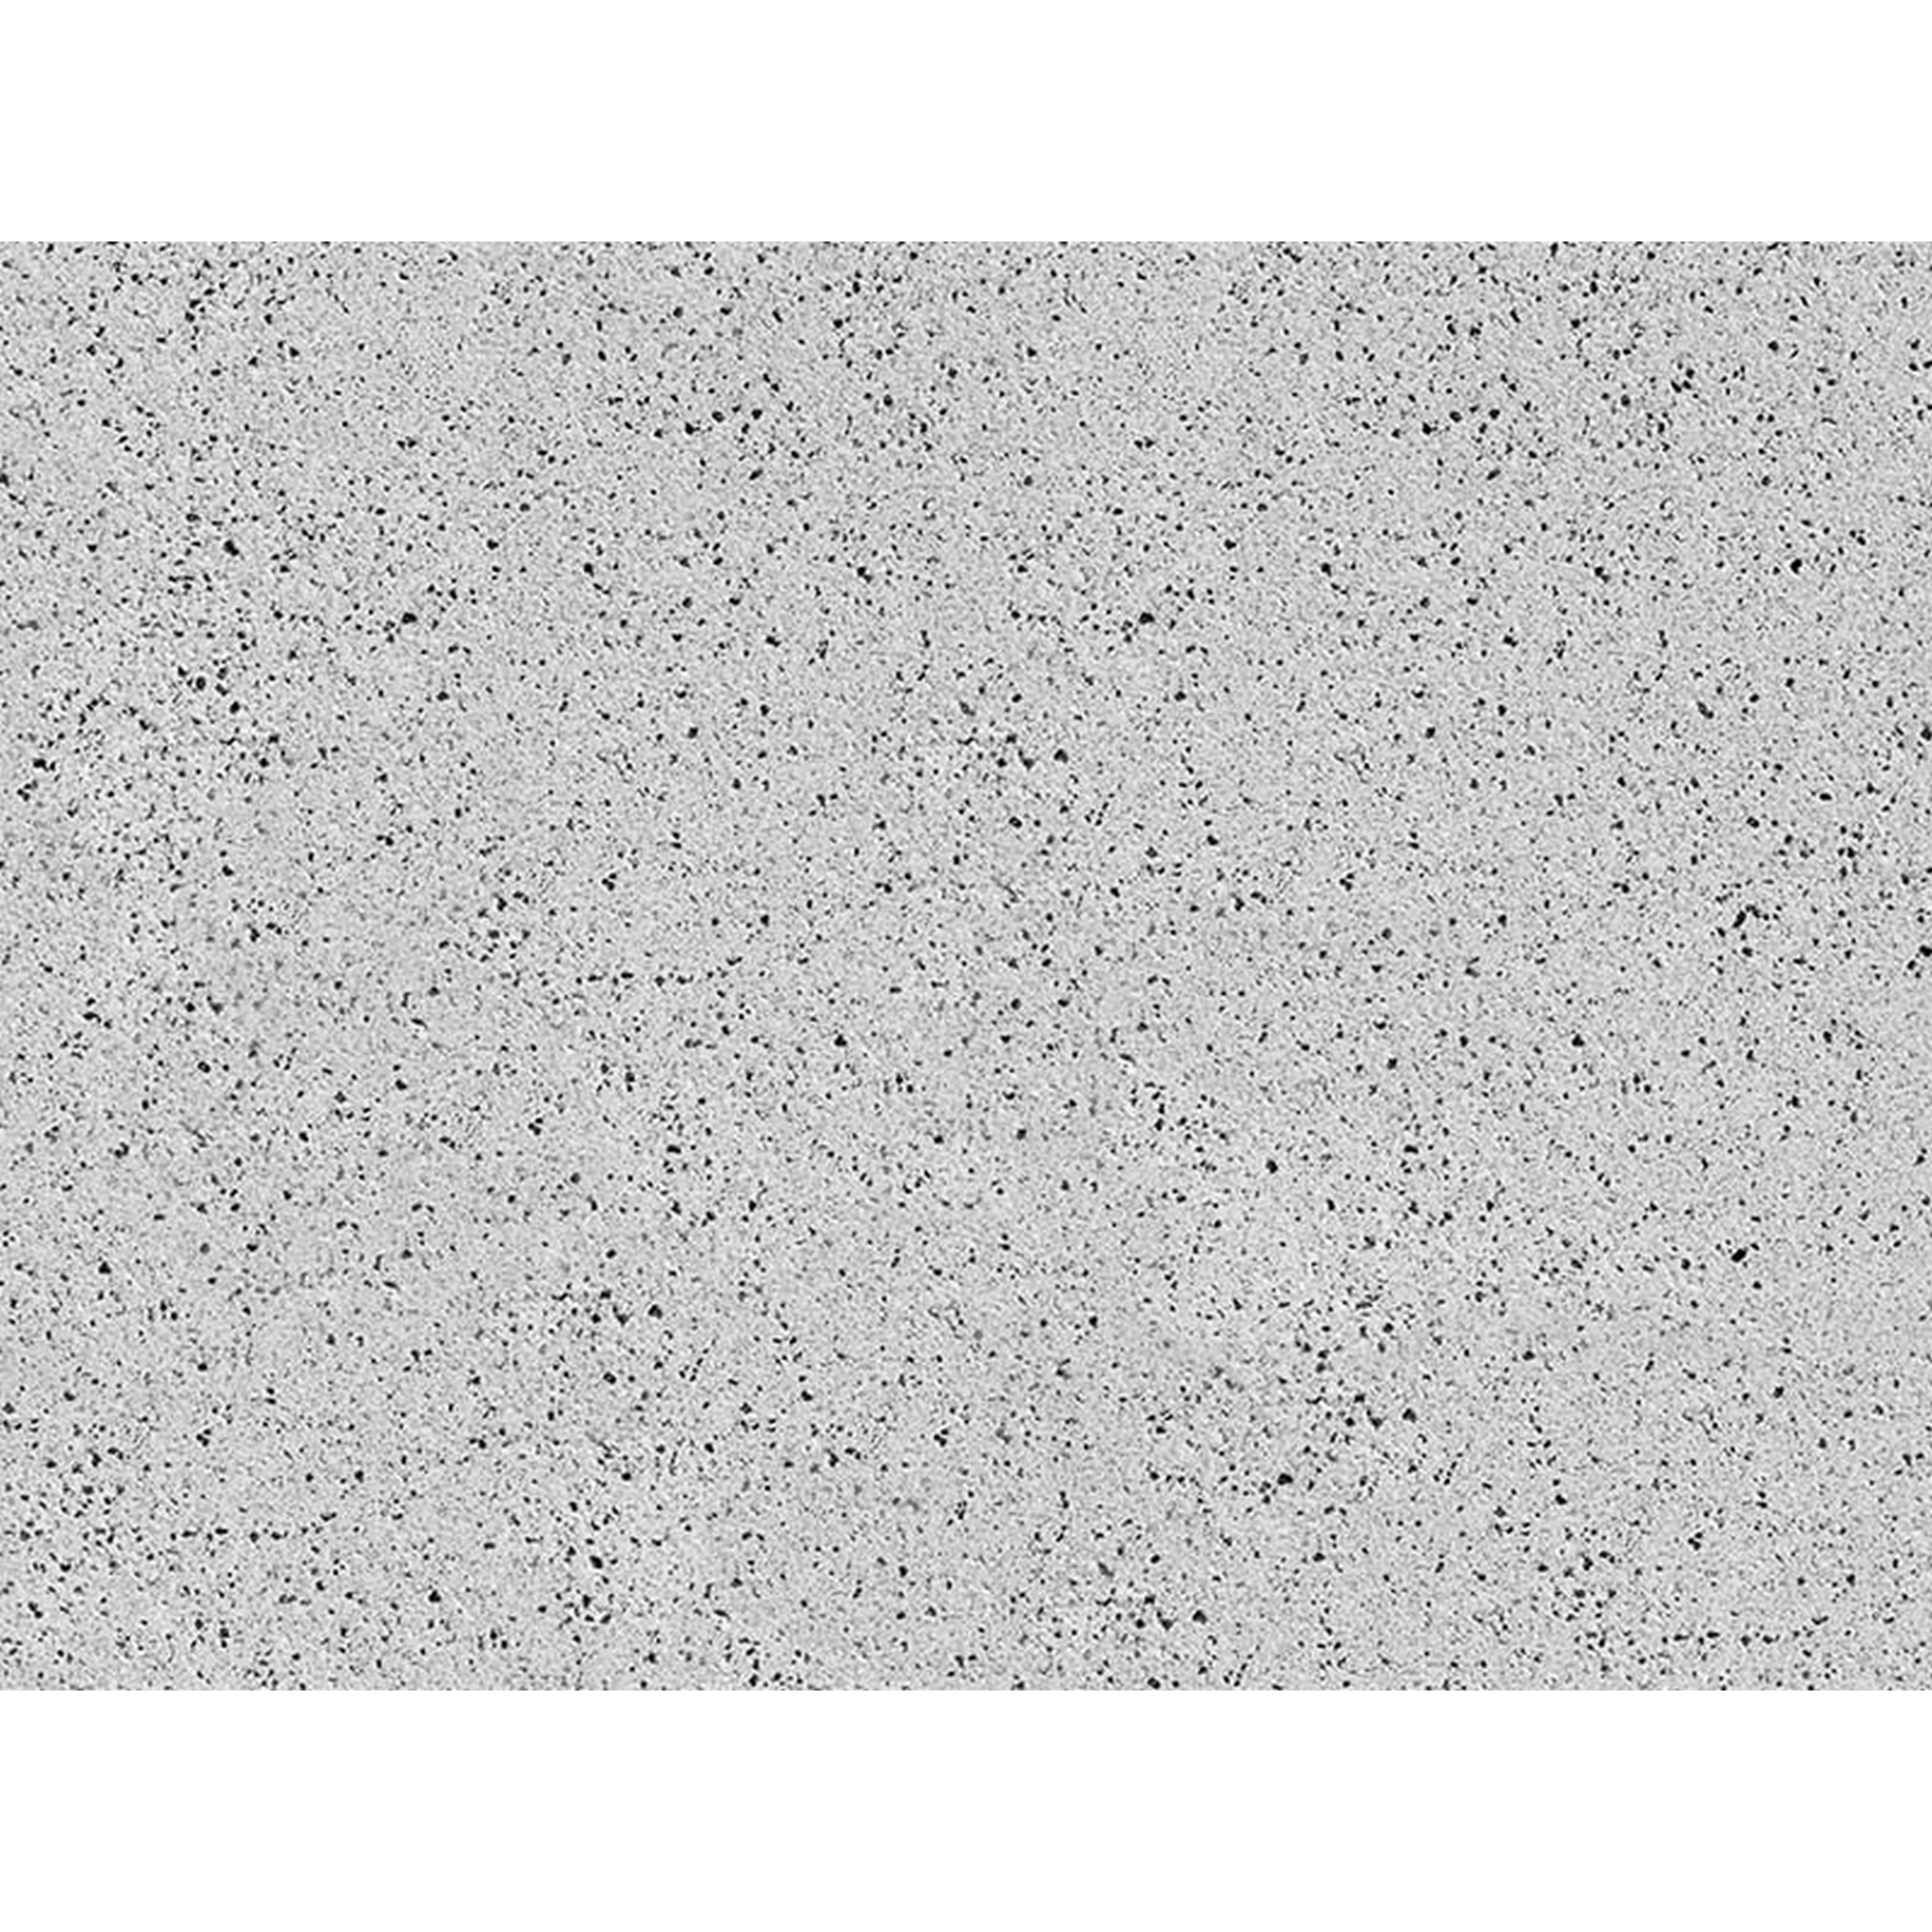 Diephaus Terrassenplatte ‚T-Court Classic‘ Beton hellgrau 60 x 40 x 4 cm  Beton